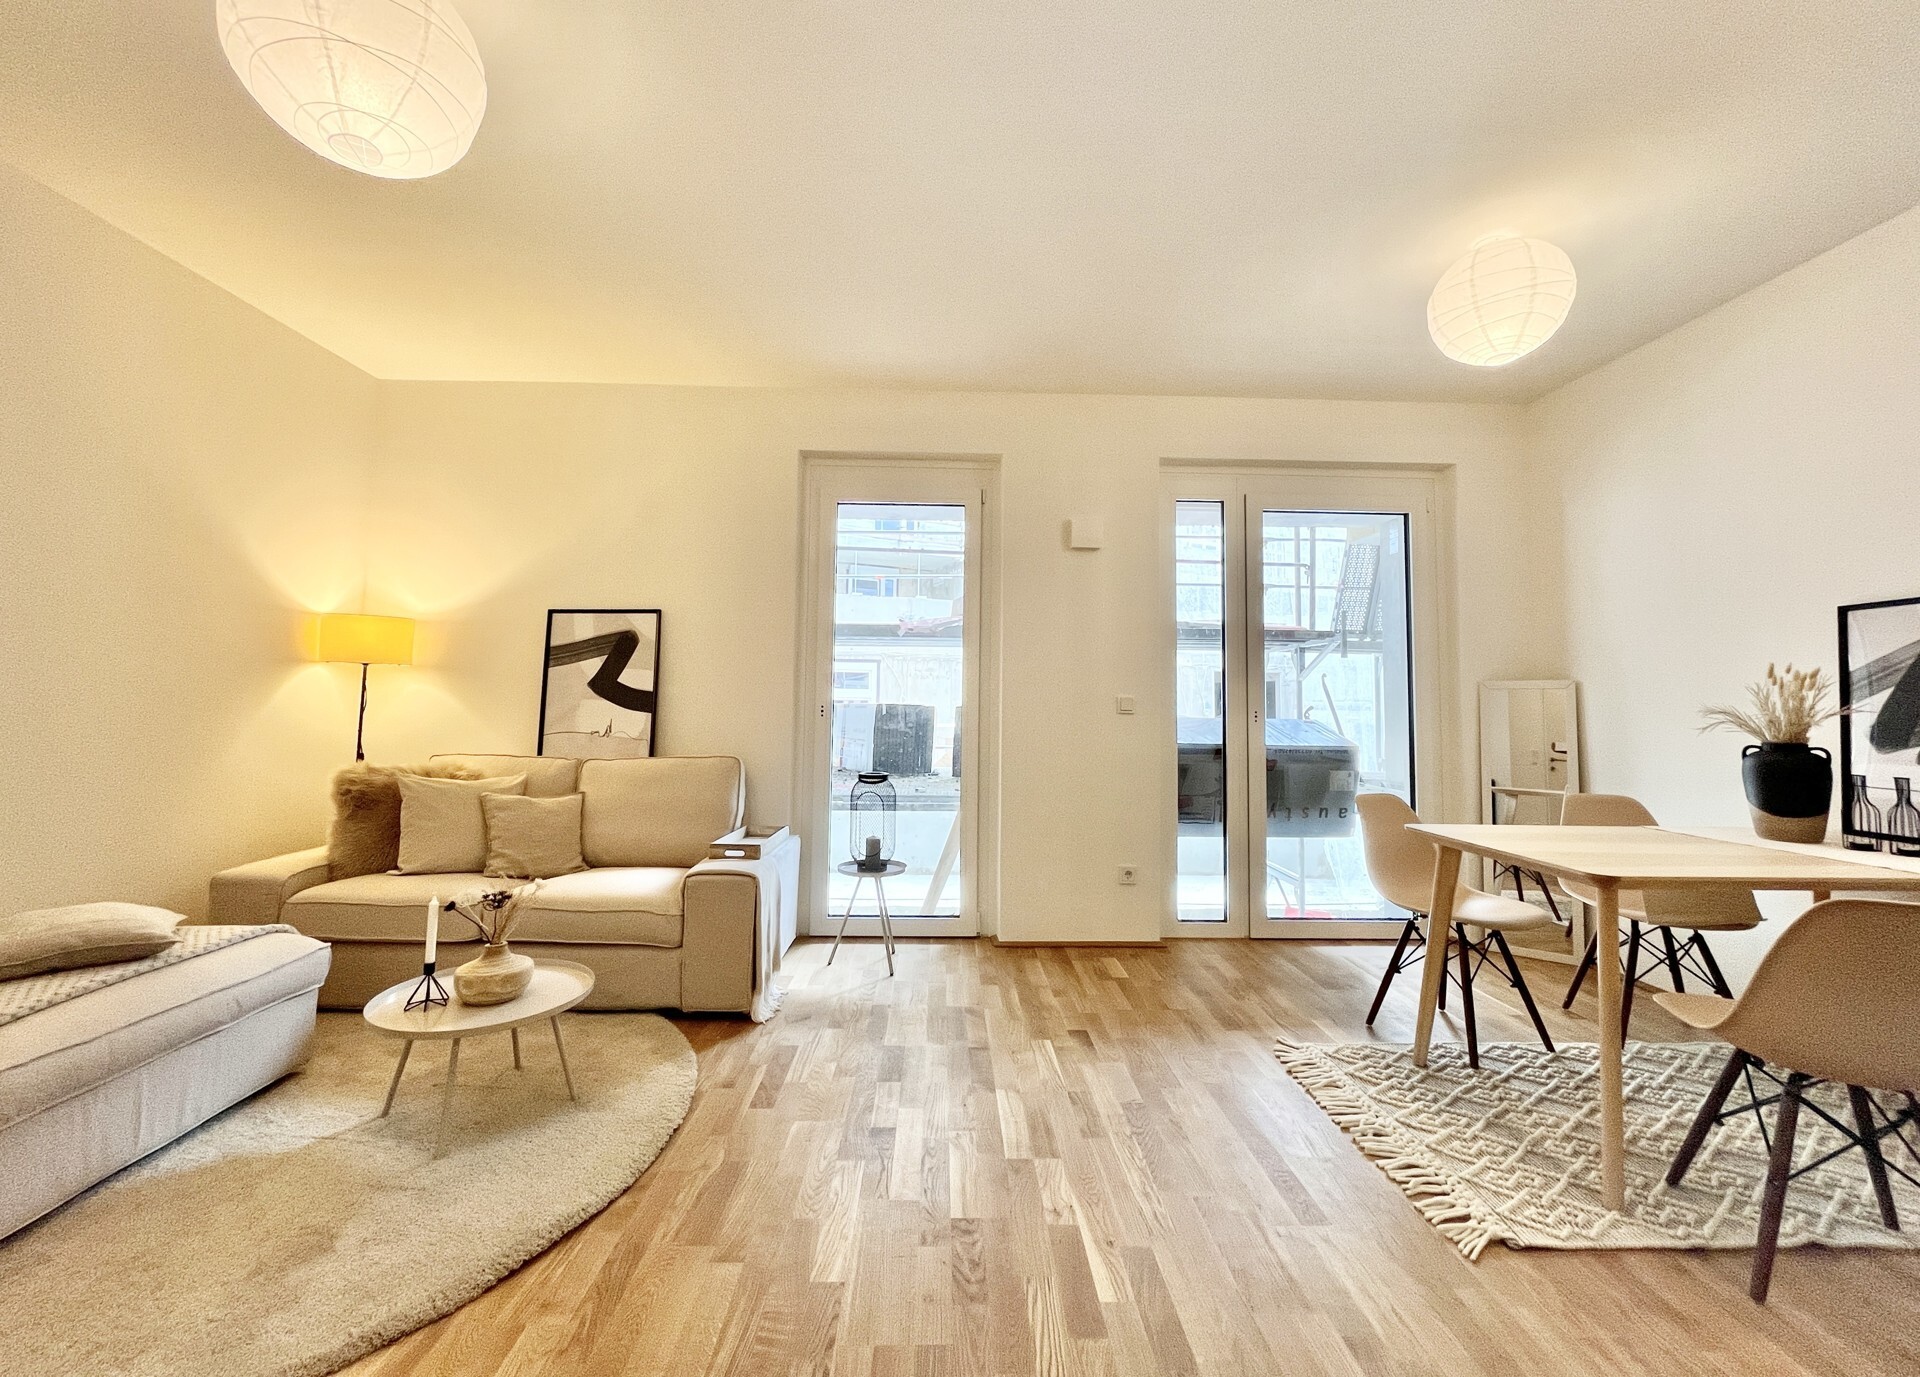 Neubauprojekt in Ottakring: 2-Zimmer-Wohnung mit Loggia in Niedrigenergiehaus - zu Mieten in 1160 Wien